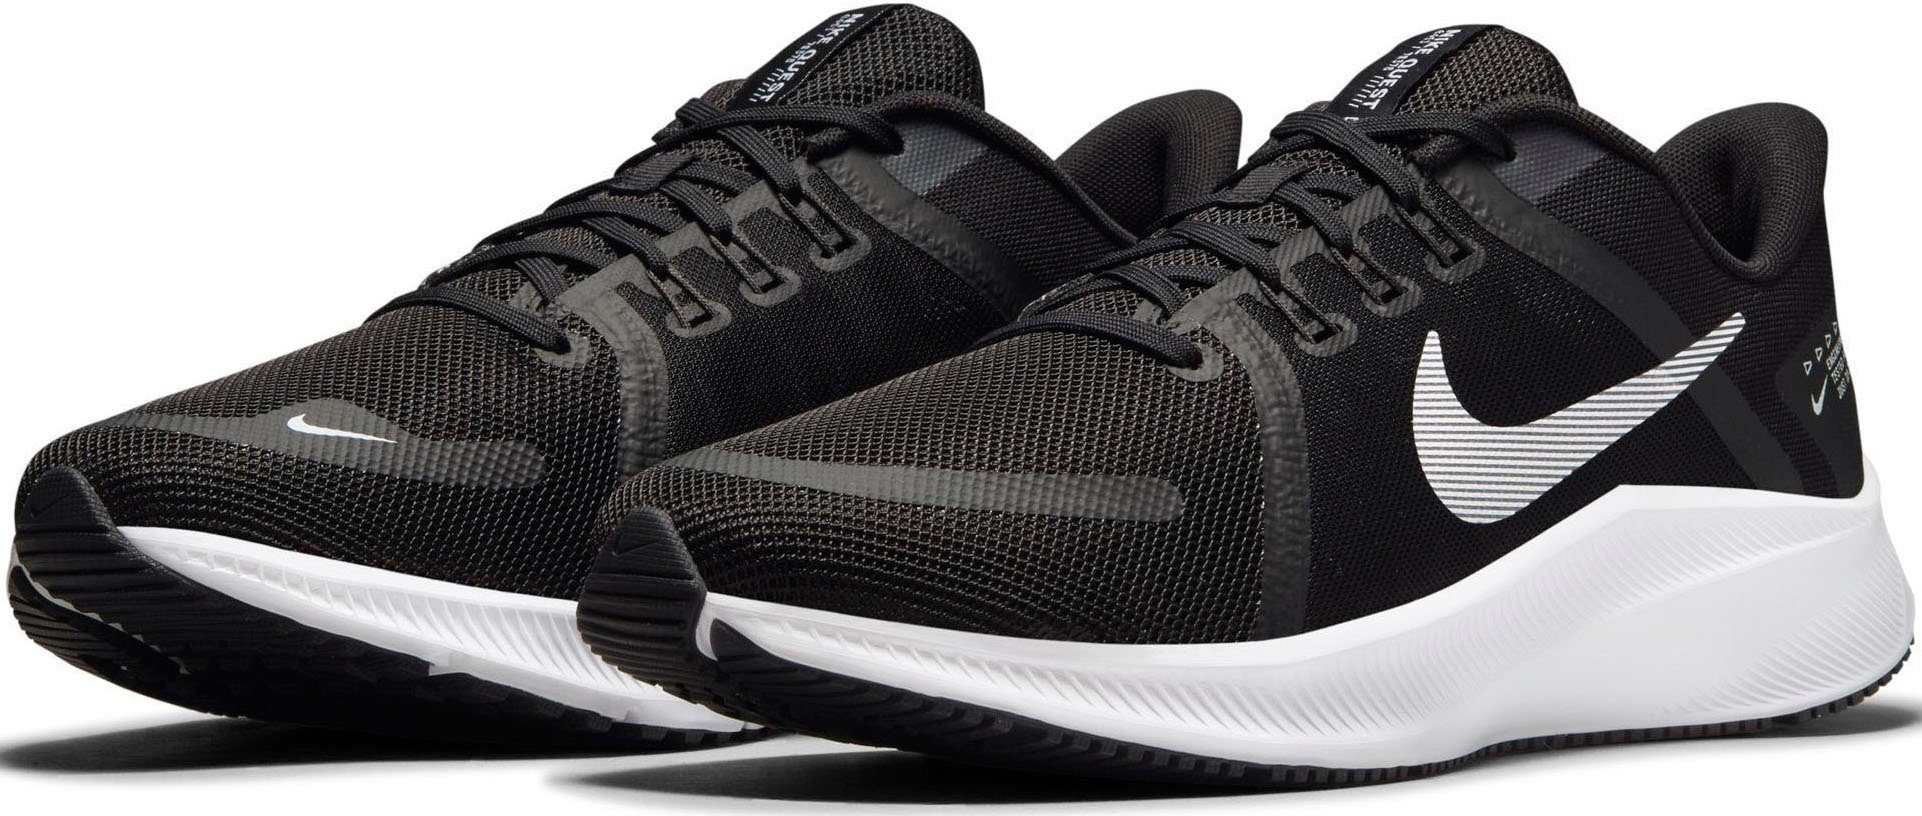 Nike Nike quest 4 hardloopschoenen zwart-wit heren heren